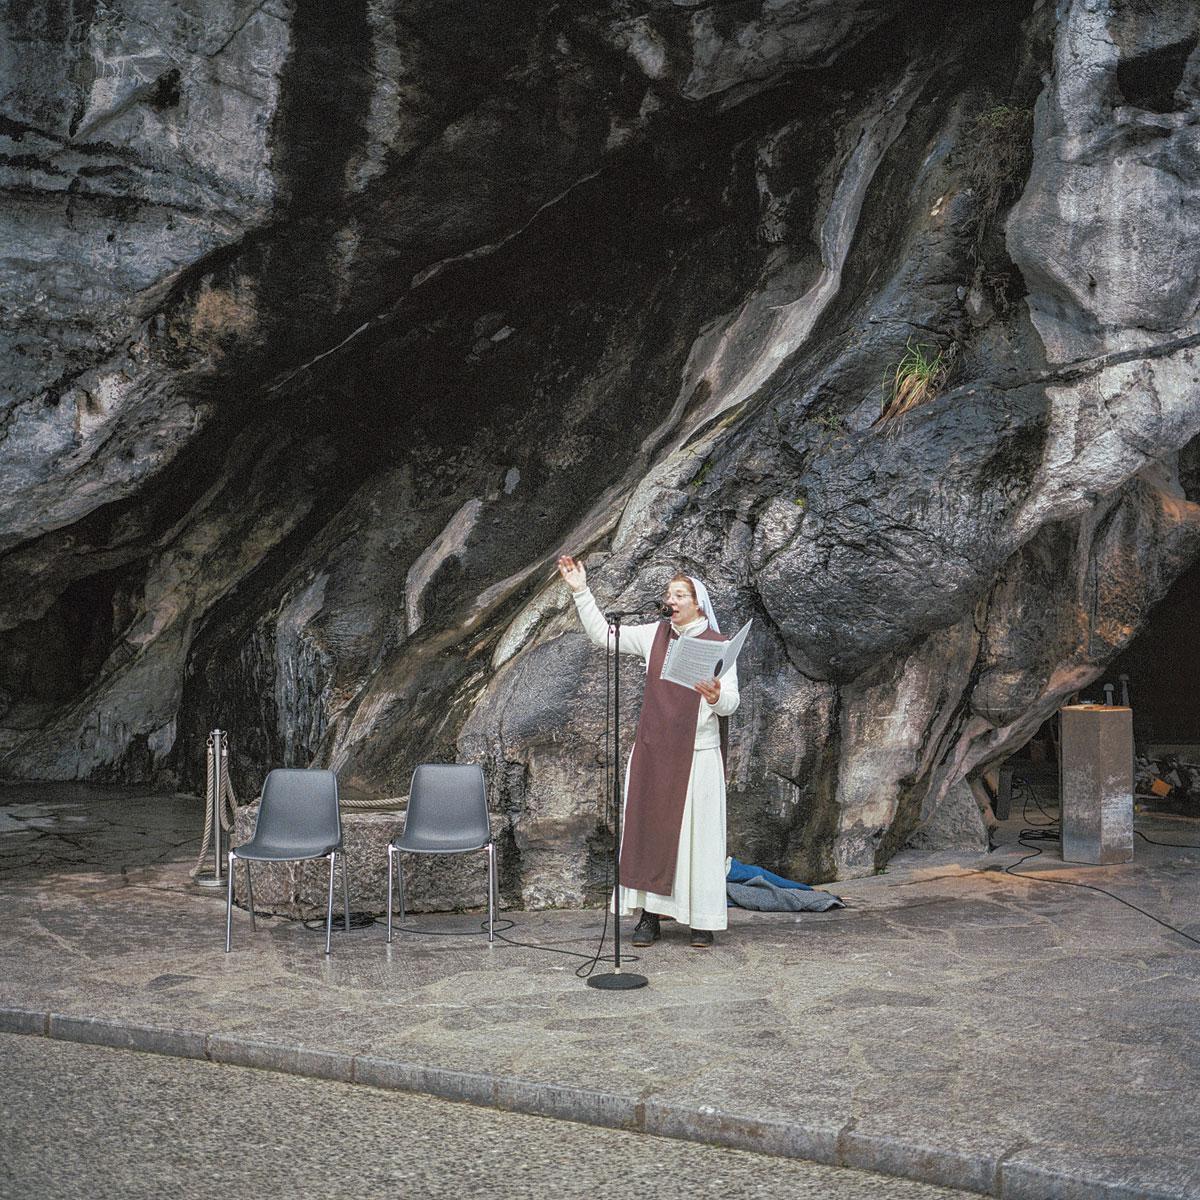 Du haut de ses 14 ans, Bernadette Soubirous a inscrit Lourdes et sa grotte de Massabielle dans l'histoire. La Sainte Vierge lui y aurait délivré des messages, lui demandant notamment de faire jaillir une source.